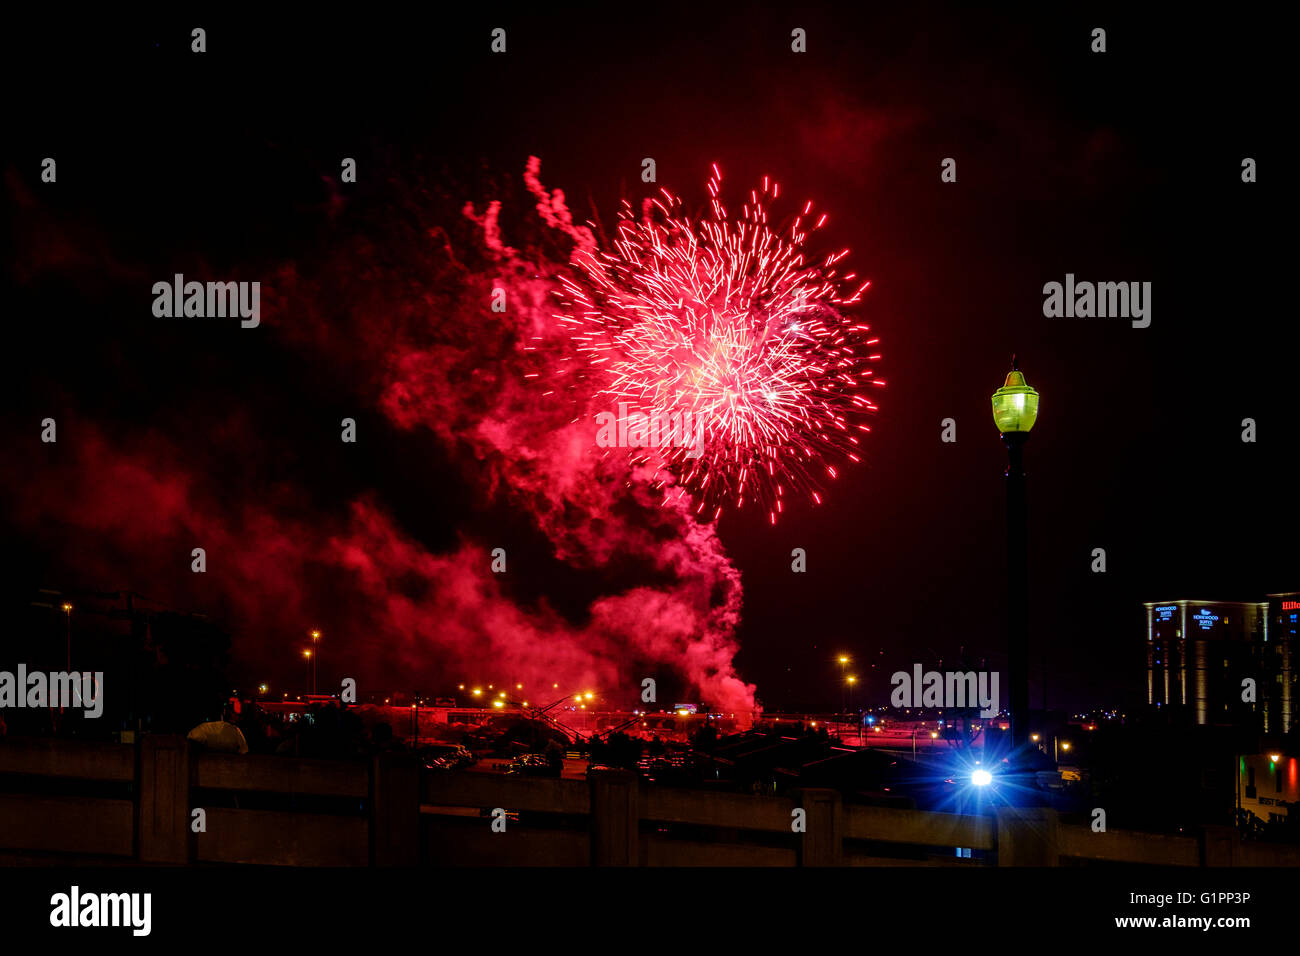 Celebración del Día de la independencia americana con explosión de fuegos artificiales sobre el Bricktown ballpark en el centro de la ciudad de Oklahoma, Oklahoma, Estados Unidos. Foto de stock